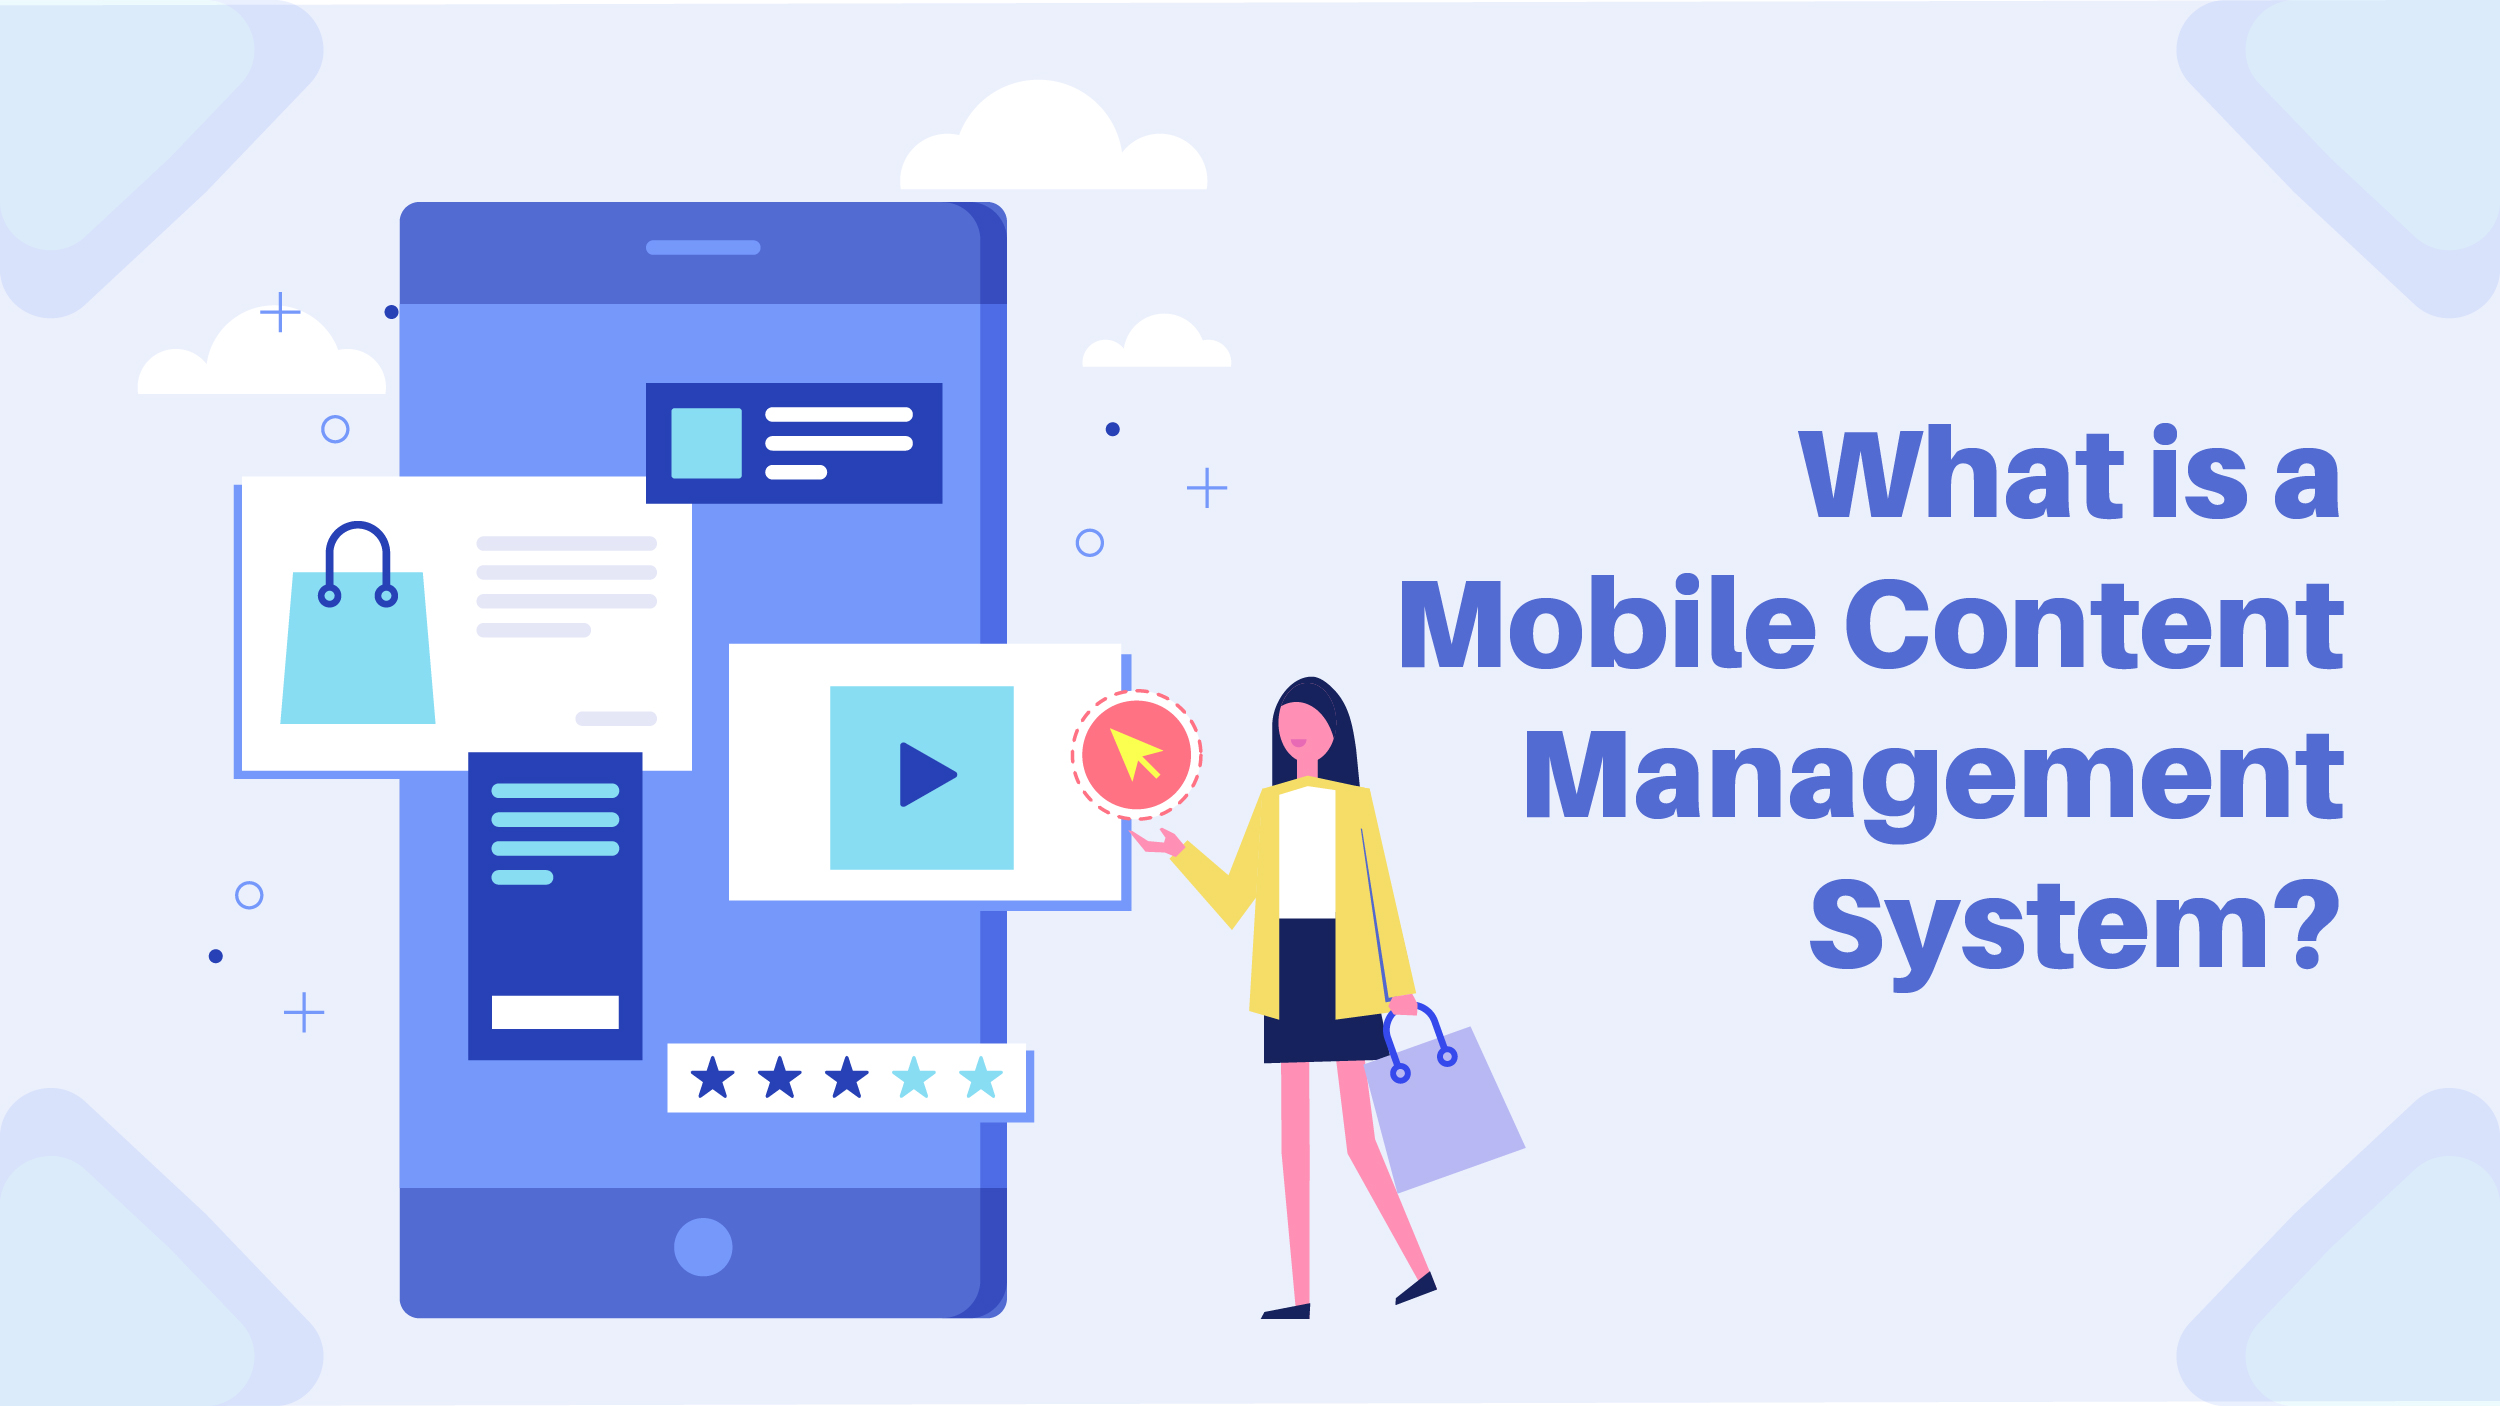 Mobile content management